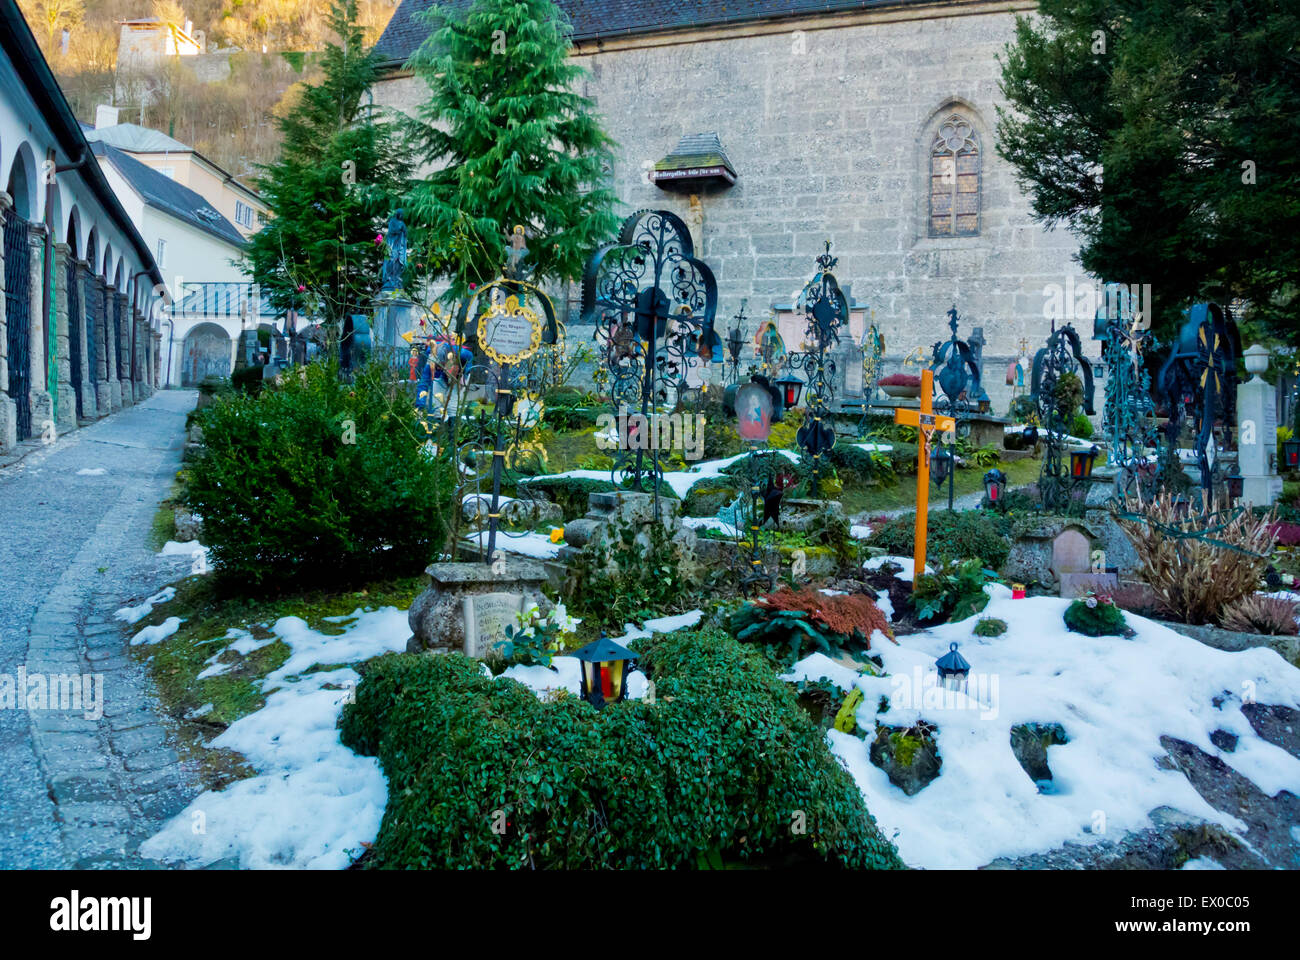 Petersfriedhof, graveyard, Altstadt, old town, Salzburg, Austria Stock Photo